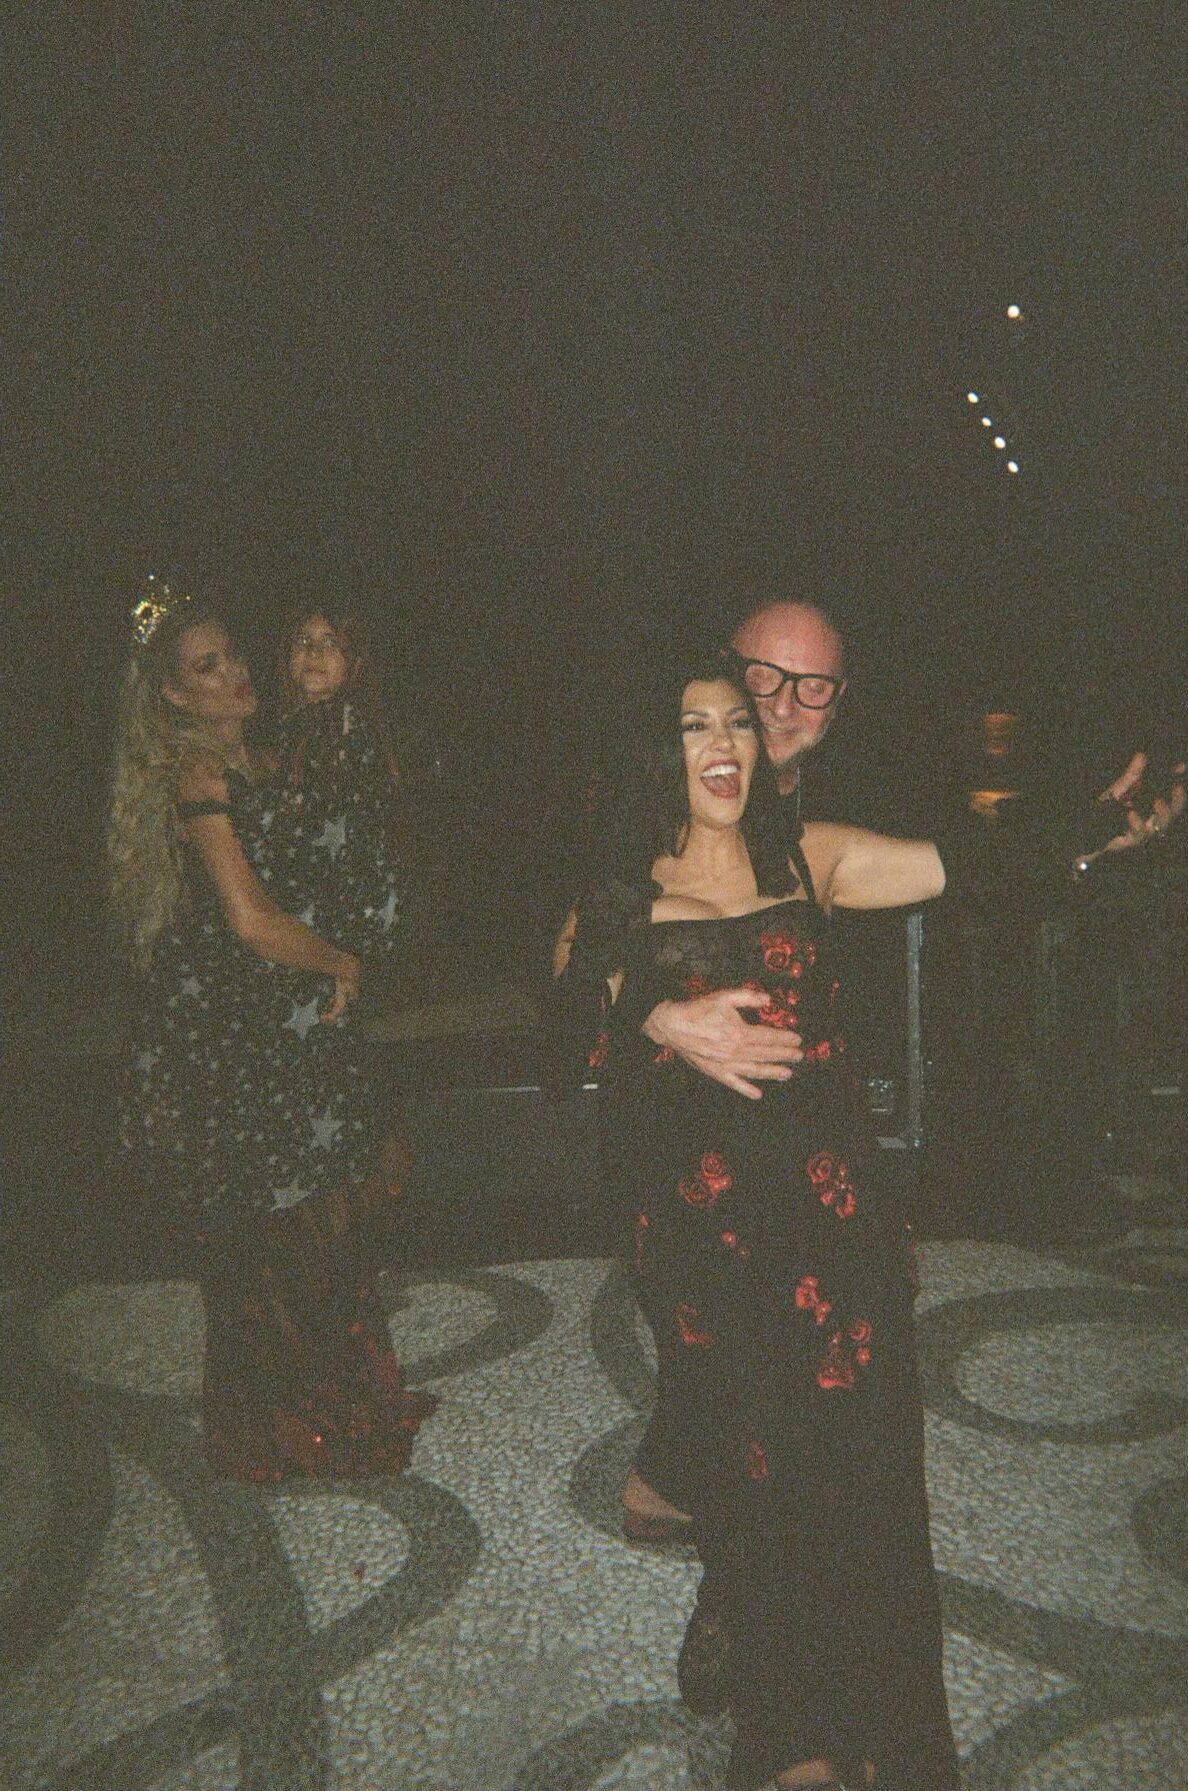 Kourtney Kardashian Barker, Domenico Dolce, Khloé Kardashian and Daughter Dancing